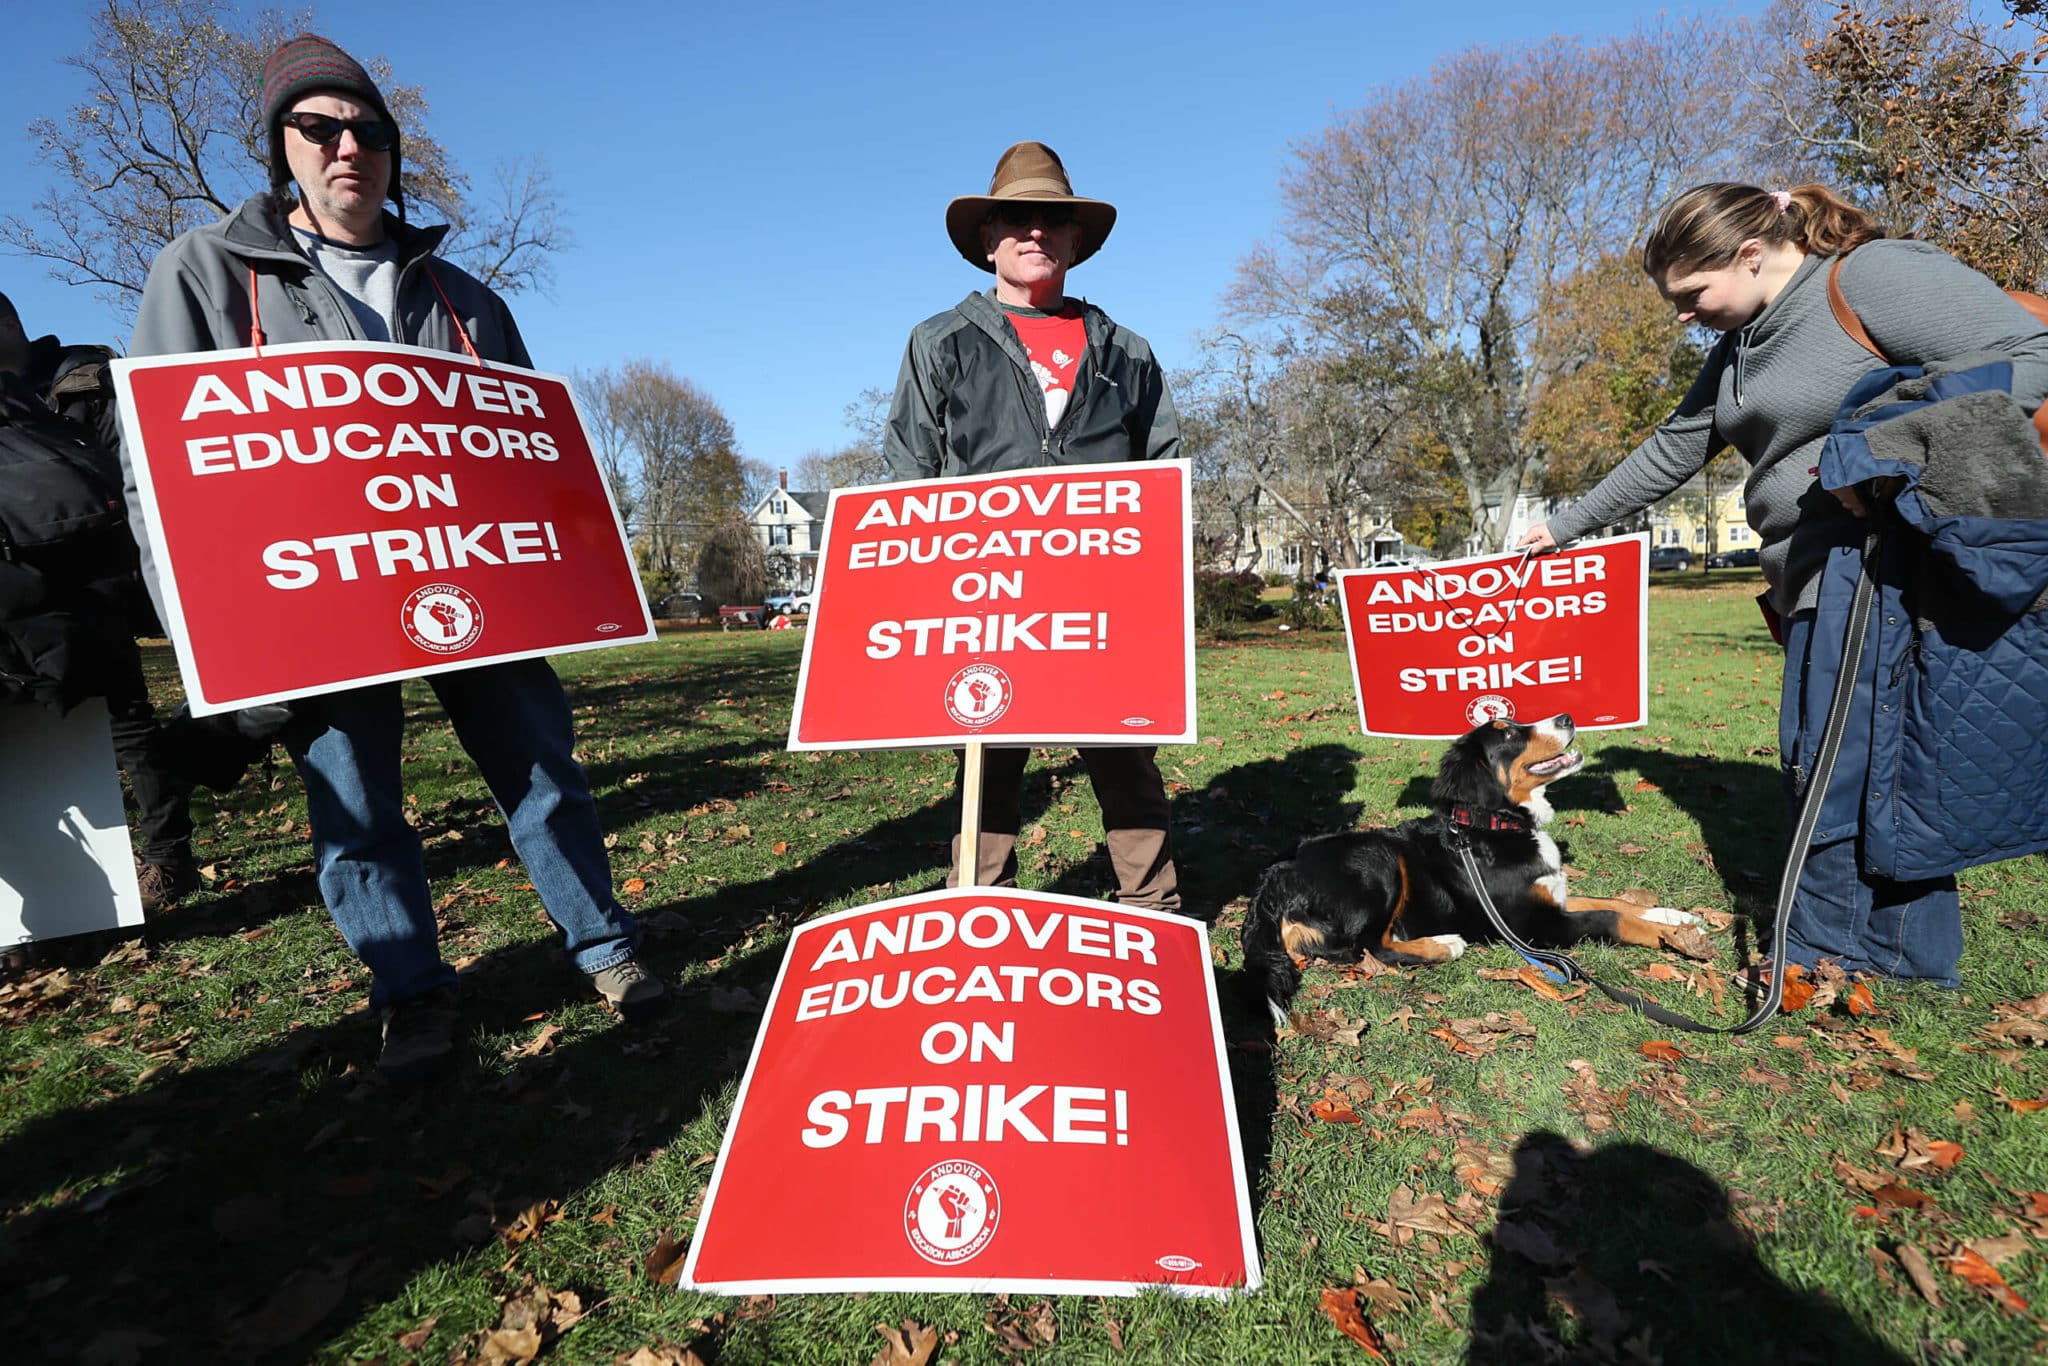 Les enseignants du Massachusetts font des vagues et obtiennent gain de cause grâce à des grèves illégales